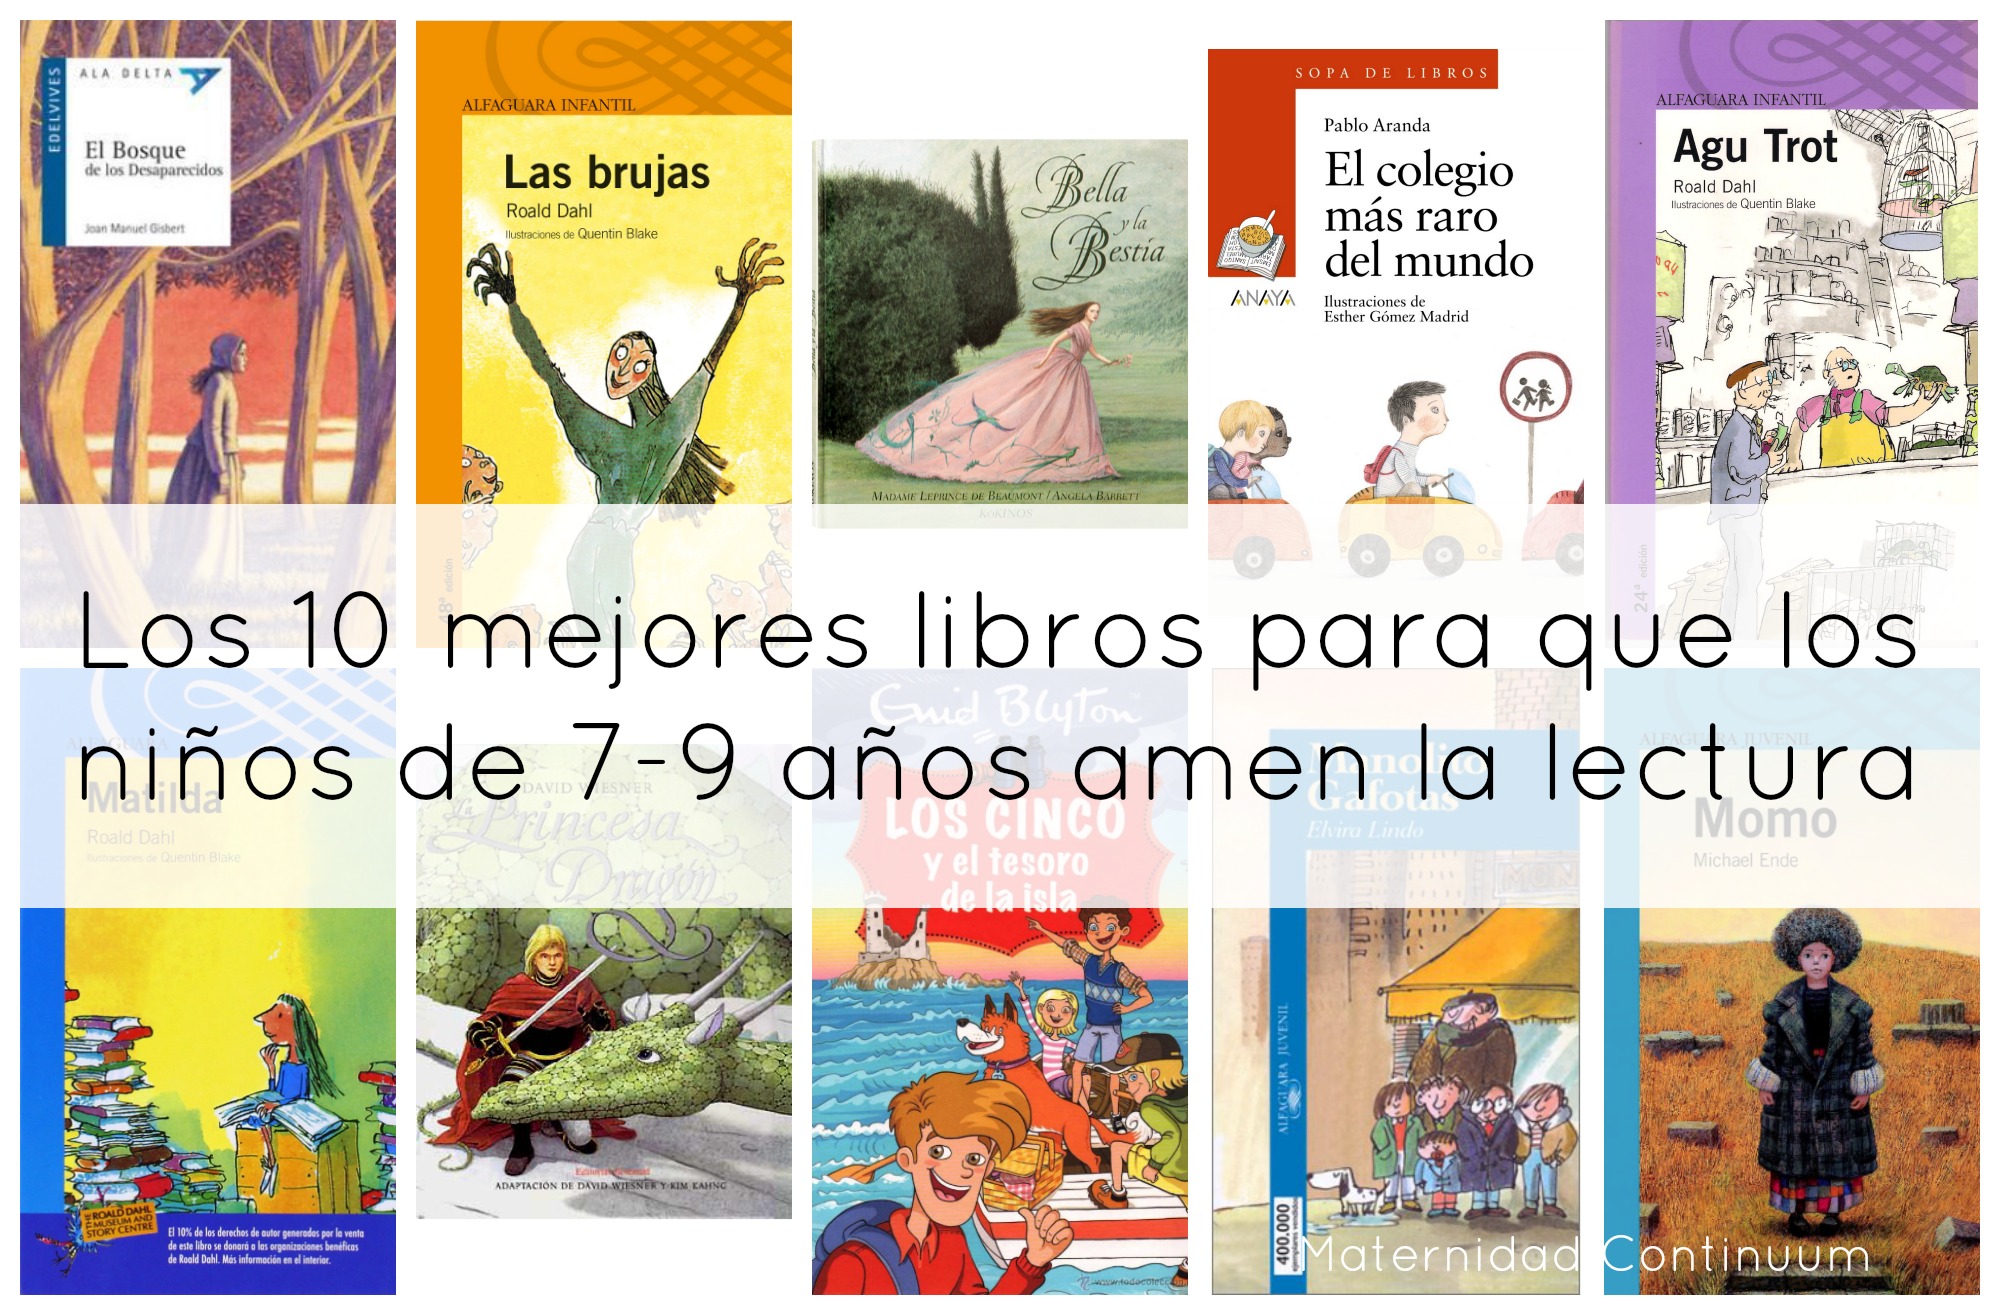 Especialista Conciliador periodista Los 10 +1 mejores libros para que los niños de 7-9 años amen la lectura –  Maternidad Continuum